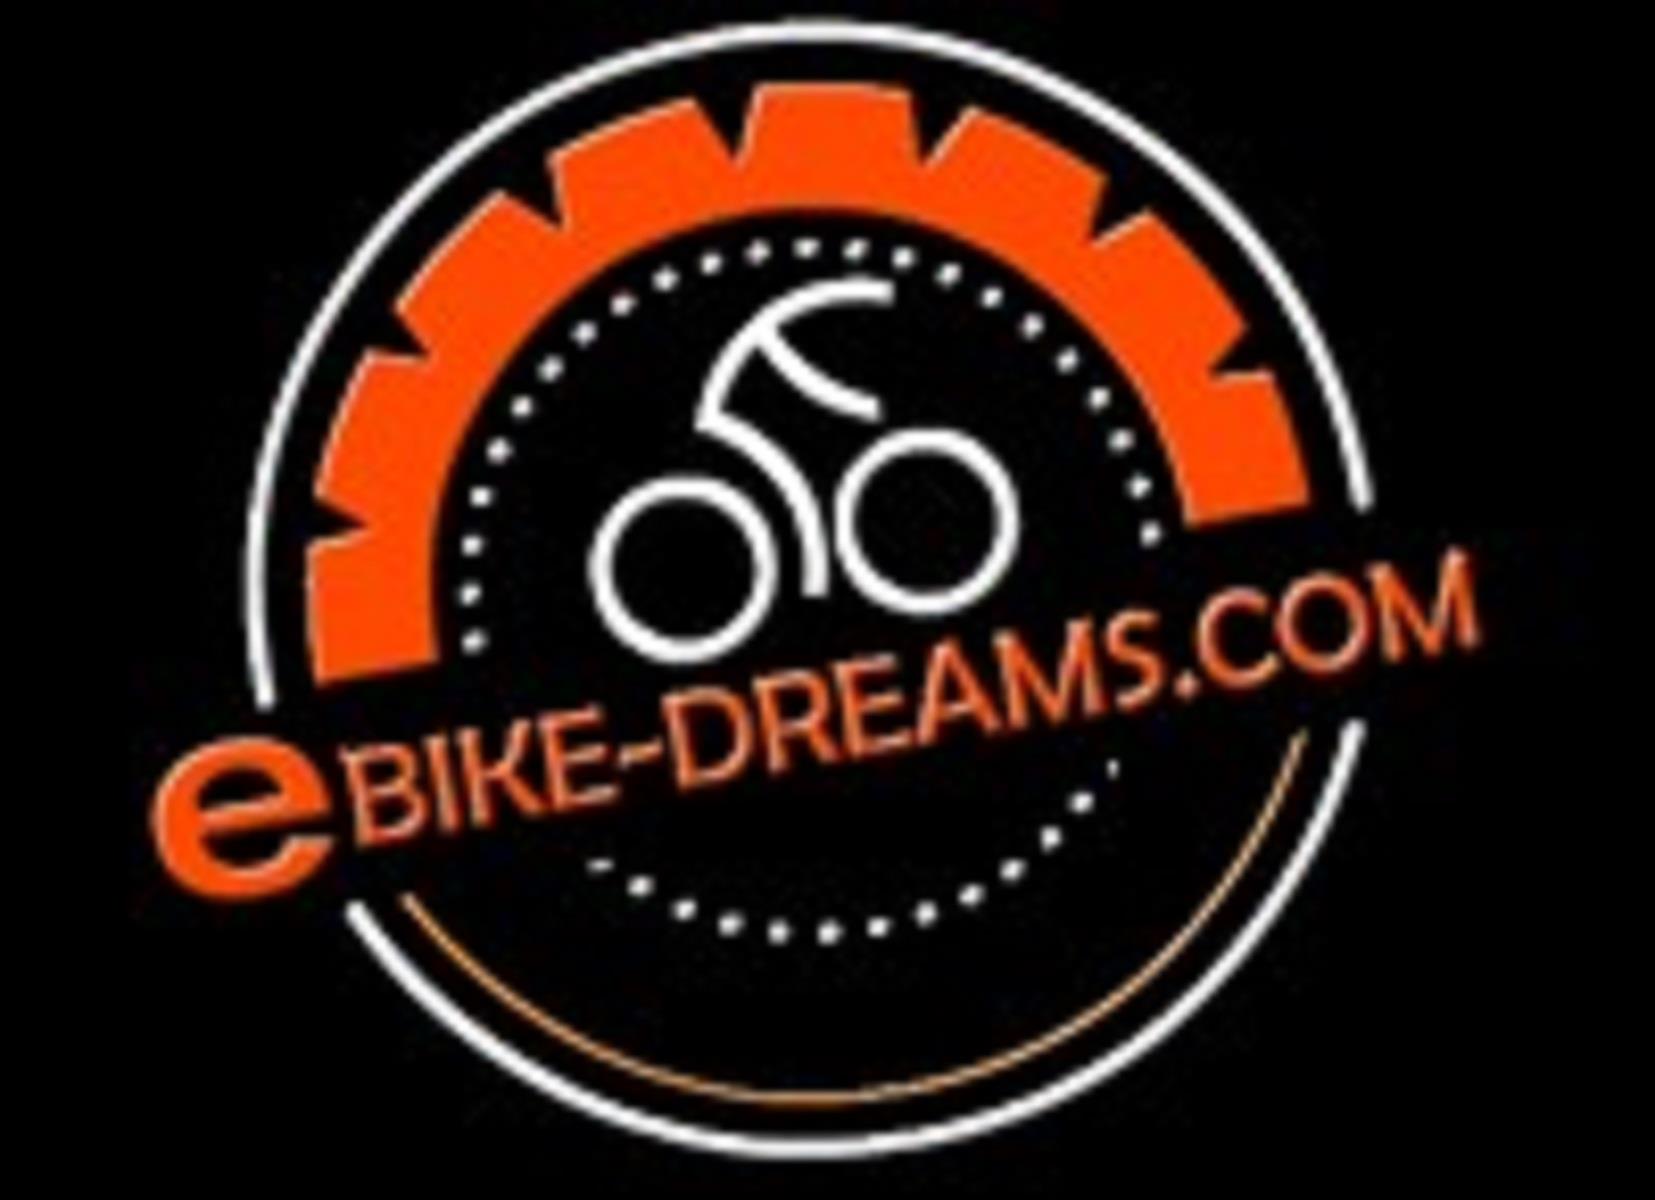 Noleggio bici E-Bike-Dreams